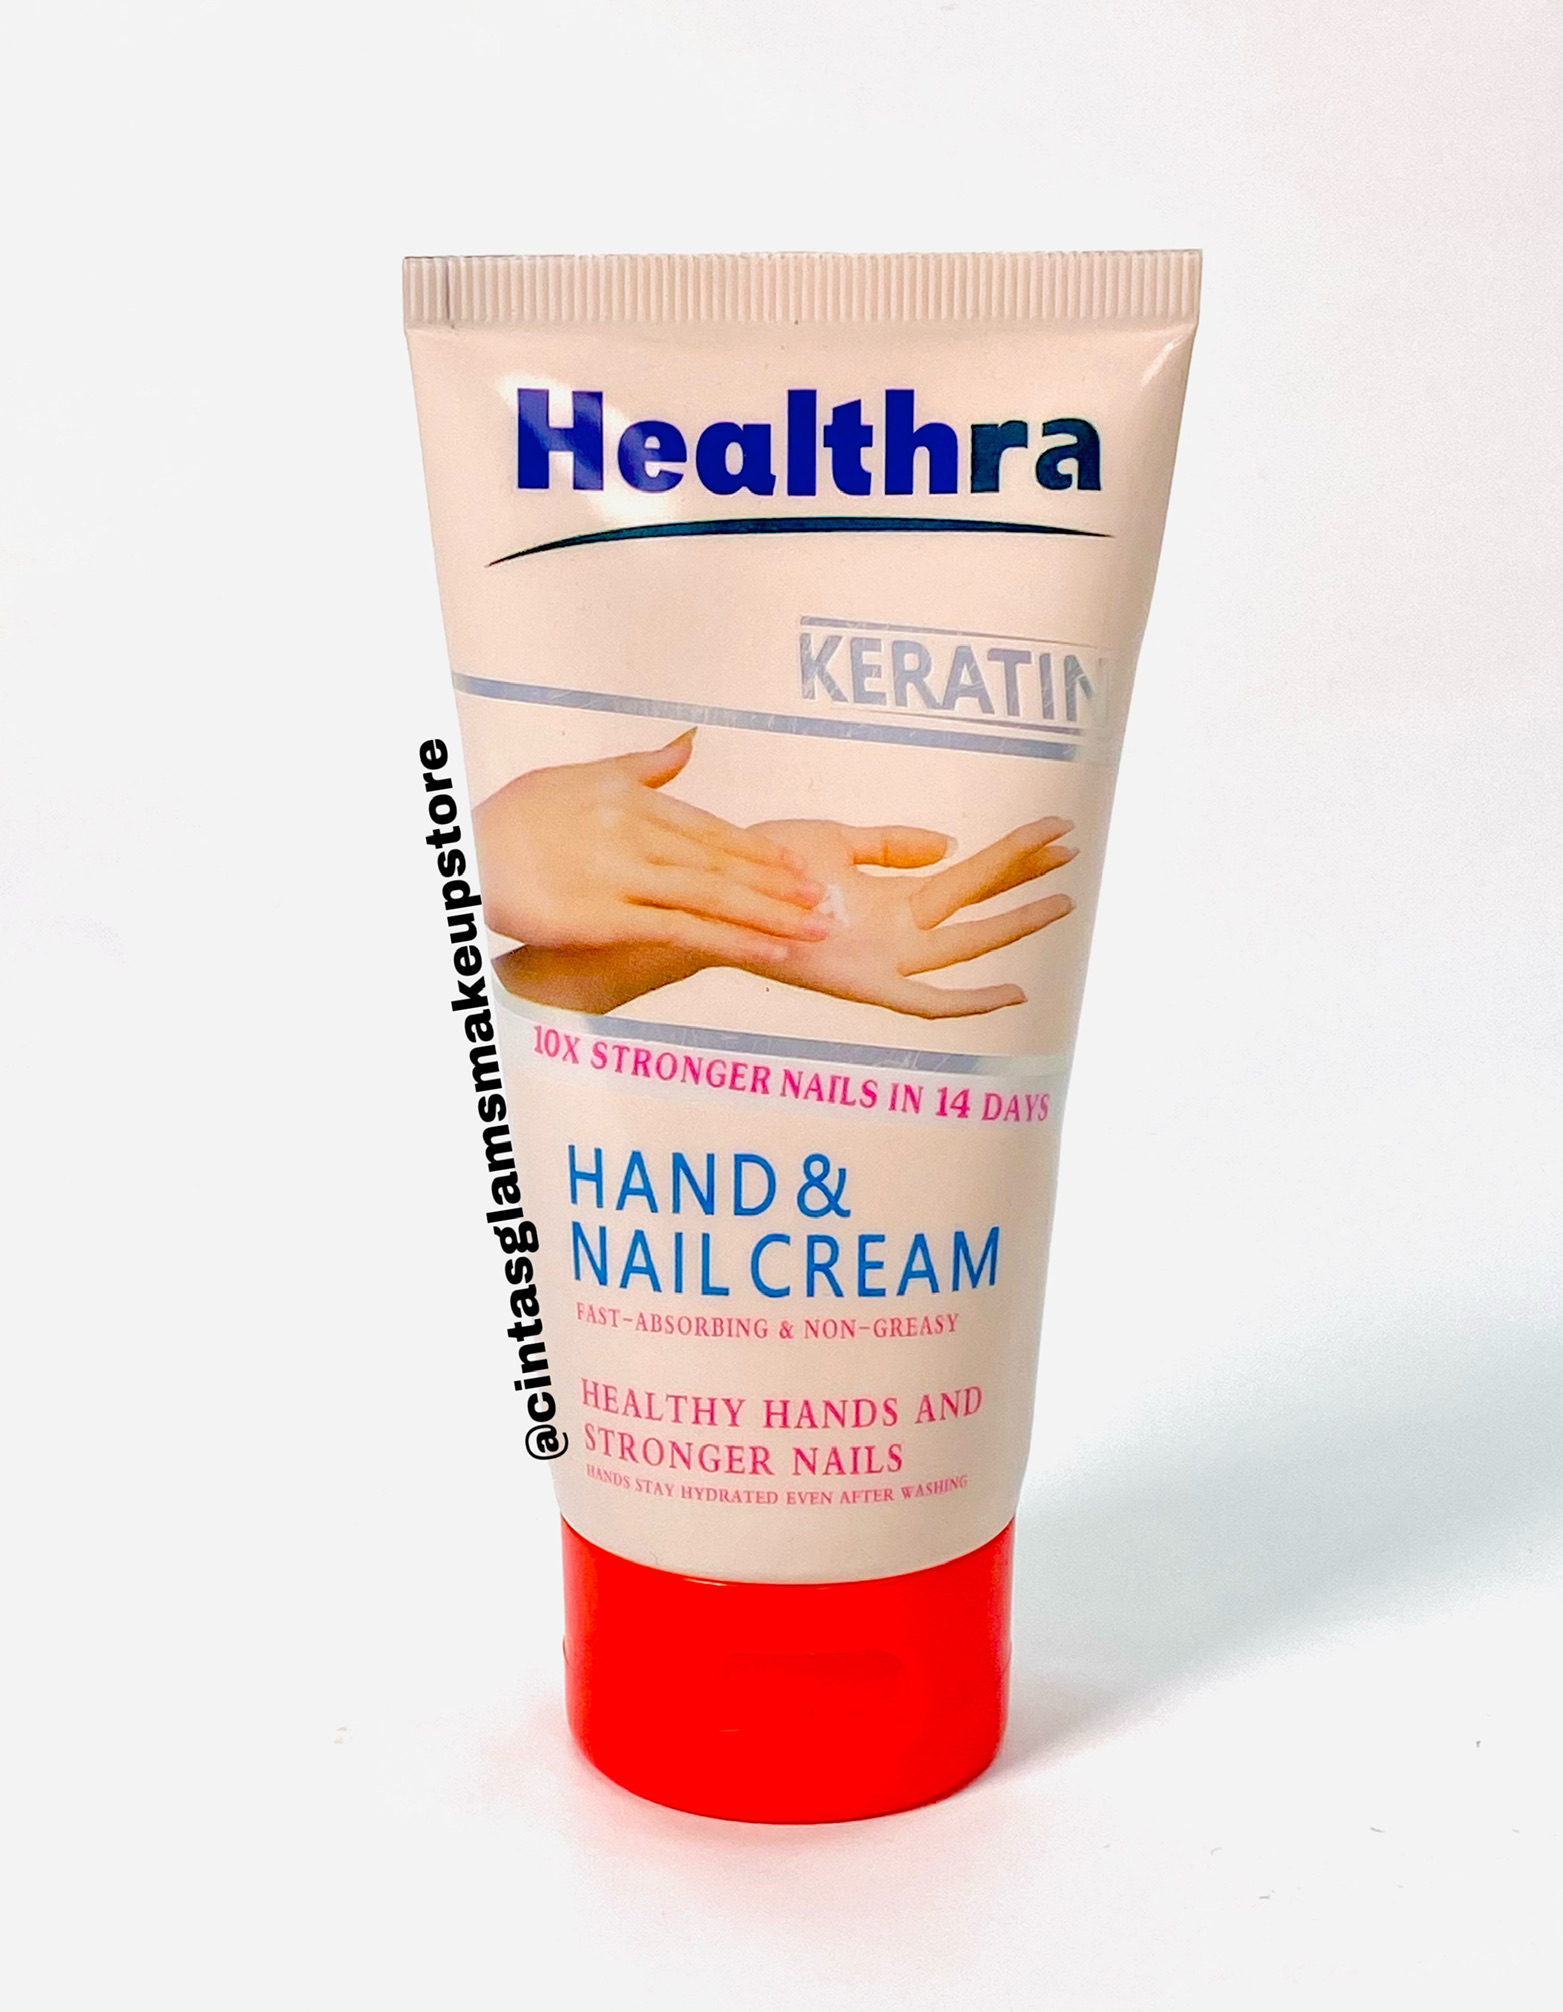 Healthra Keratin Hand and Nail Cream